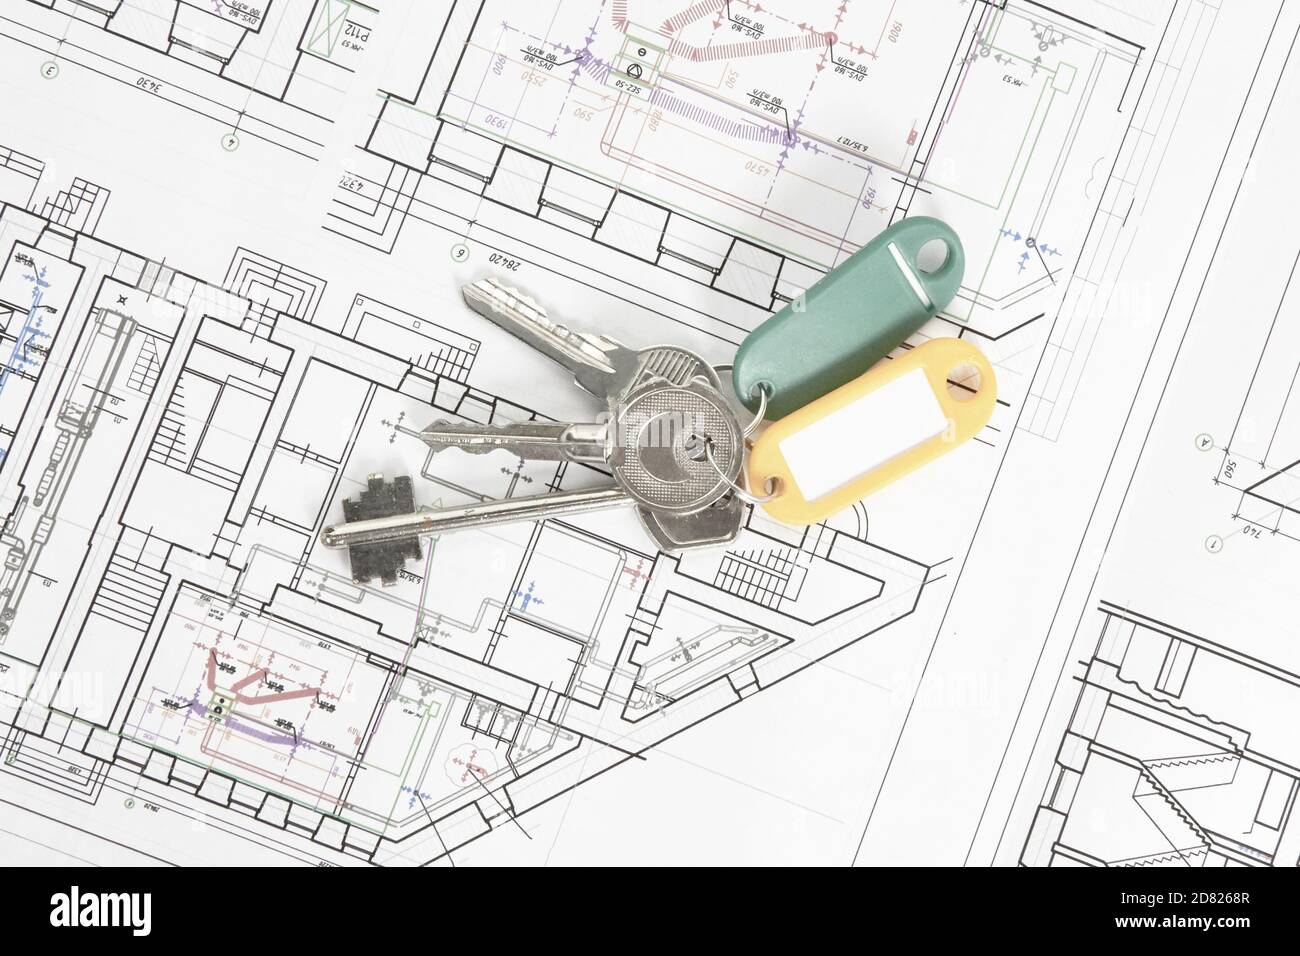 dessins architecturaux sur une feuille blanche avec les clés de la maison, le concept de construction et de conception de l'immobilier. Banque D'Images